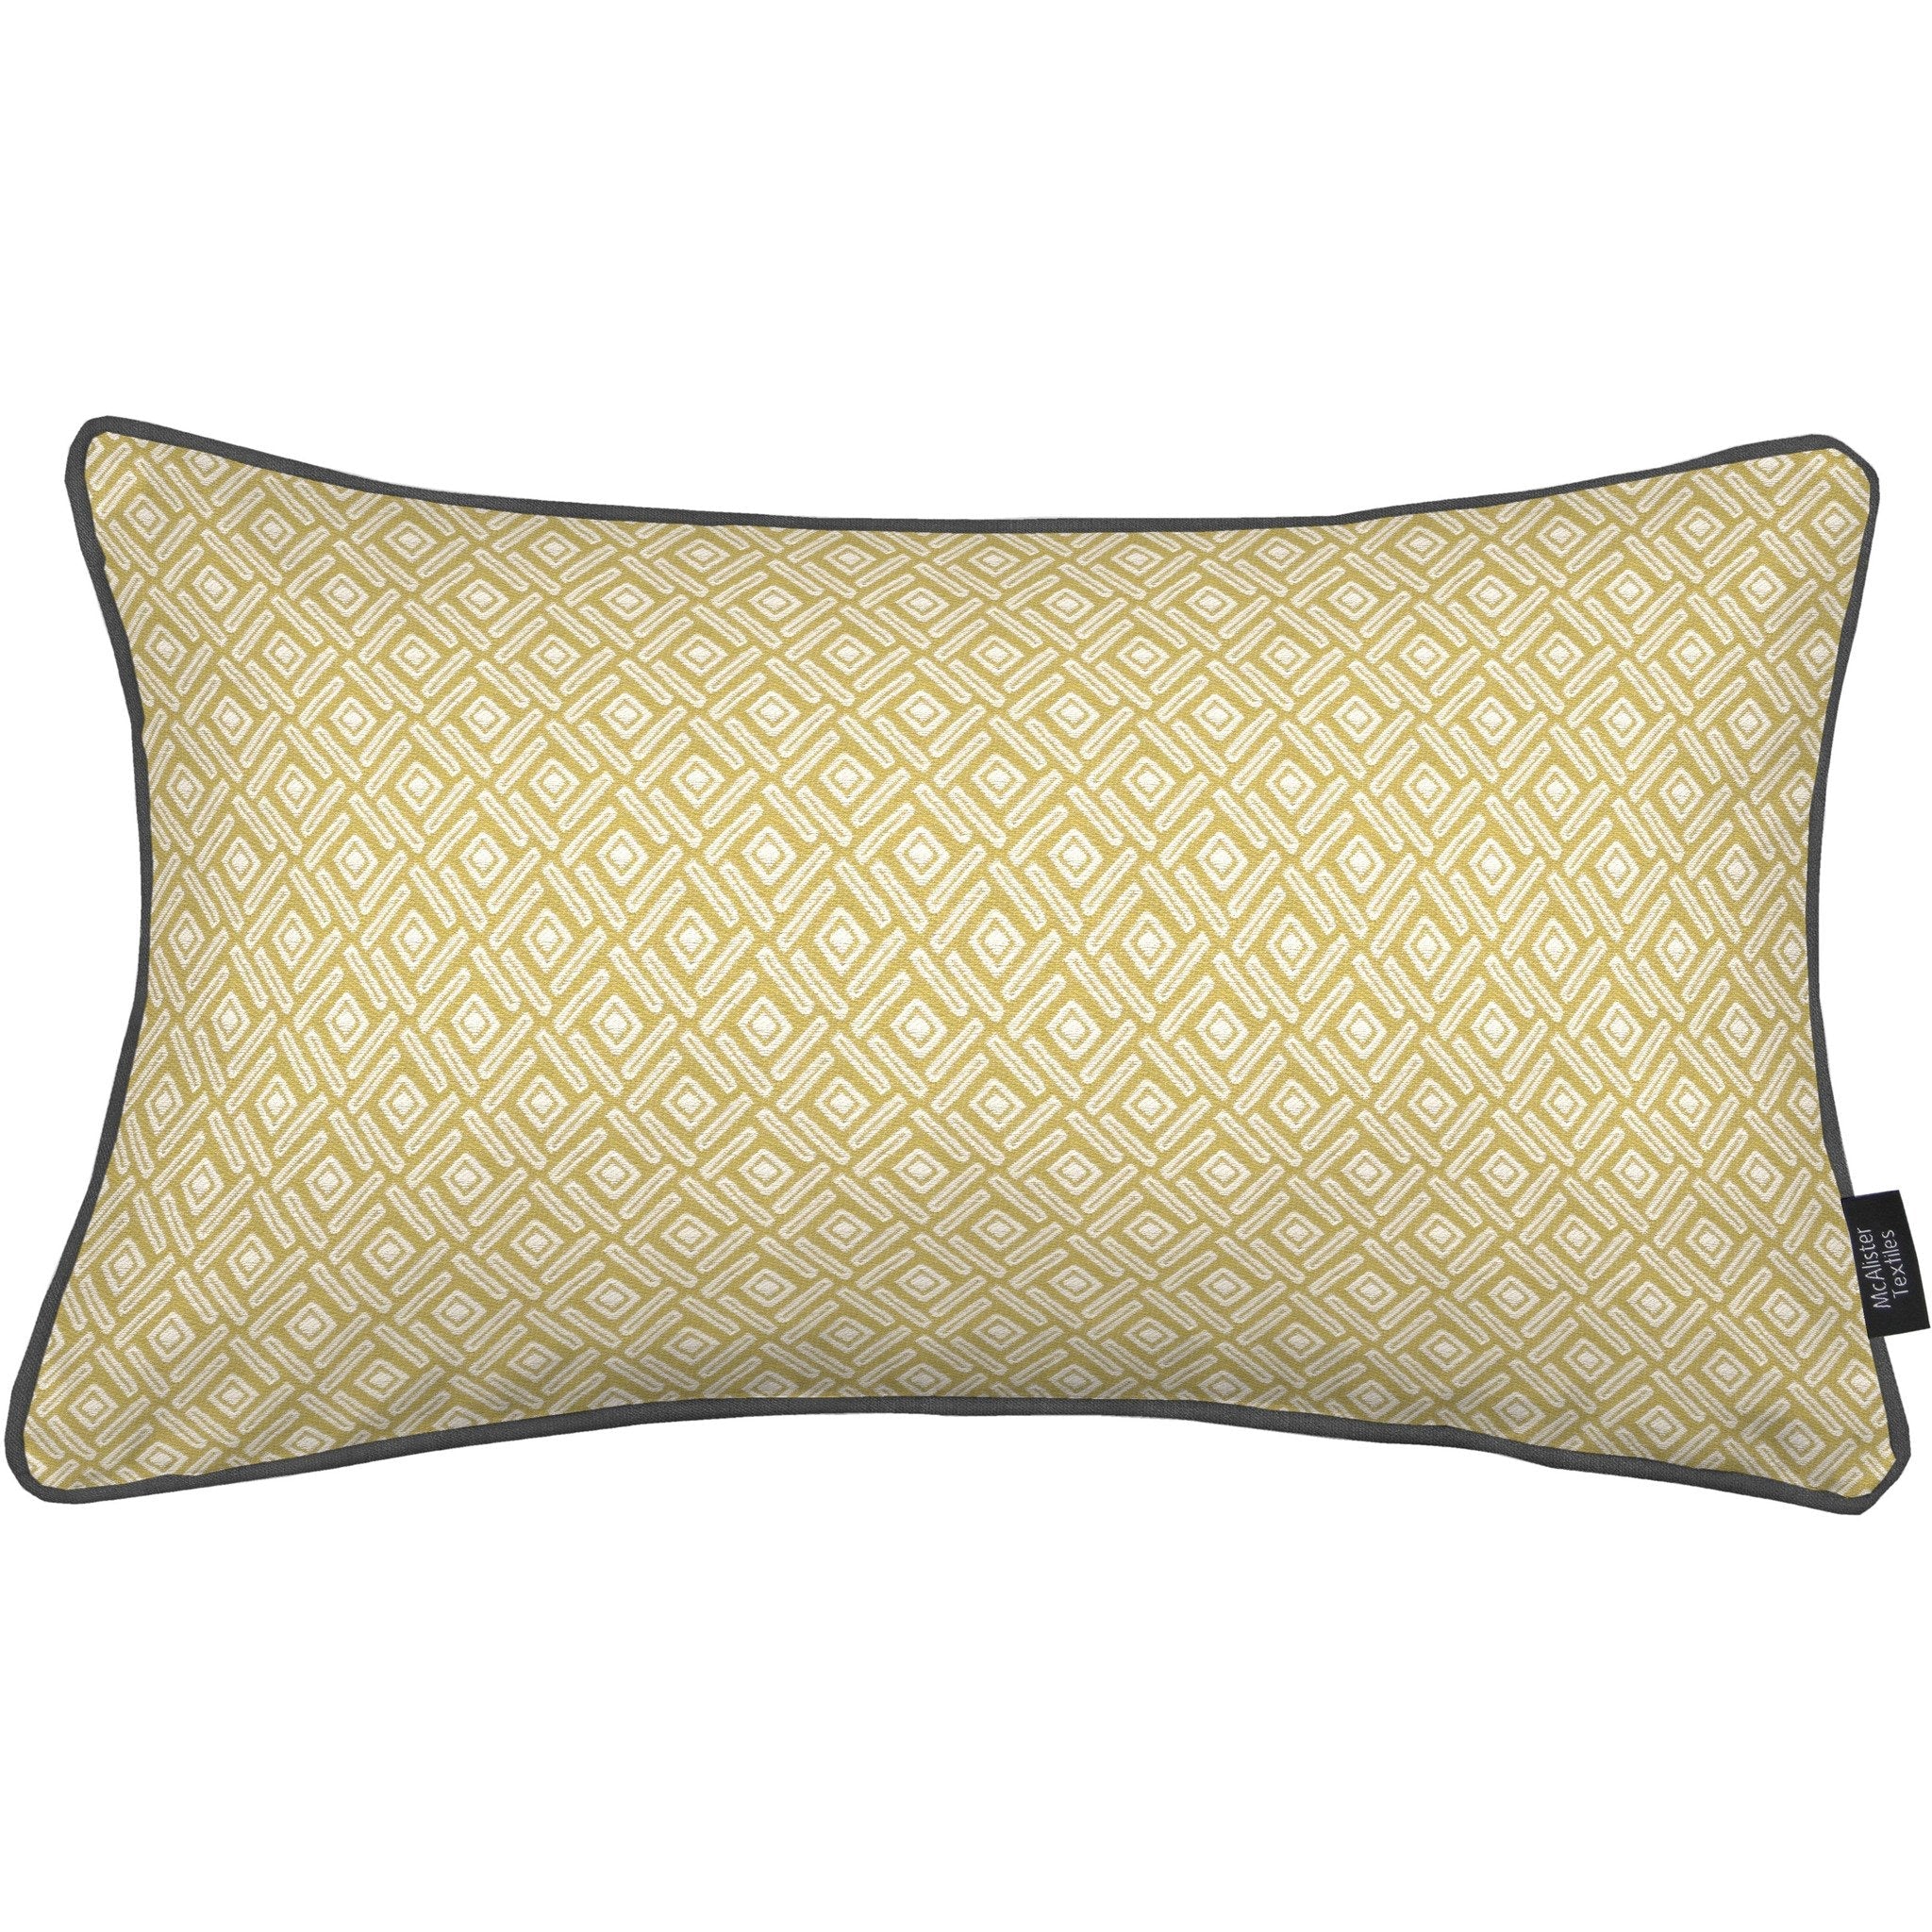 McAlister Textiles Elva Geometric Ochre Yellow Pillow Pillow Cover Only 50cm x 30cm 